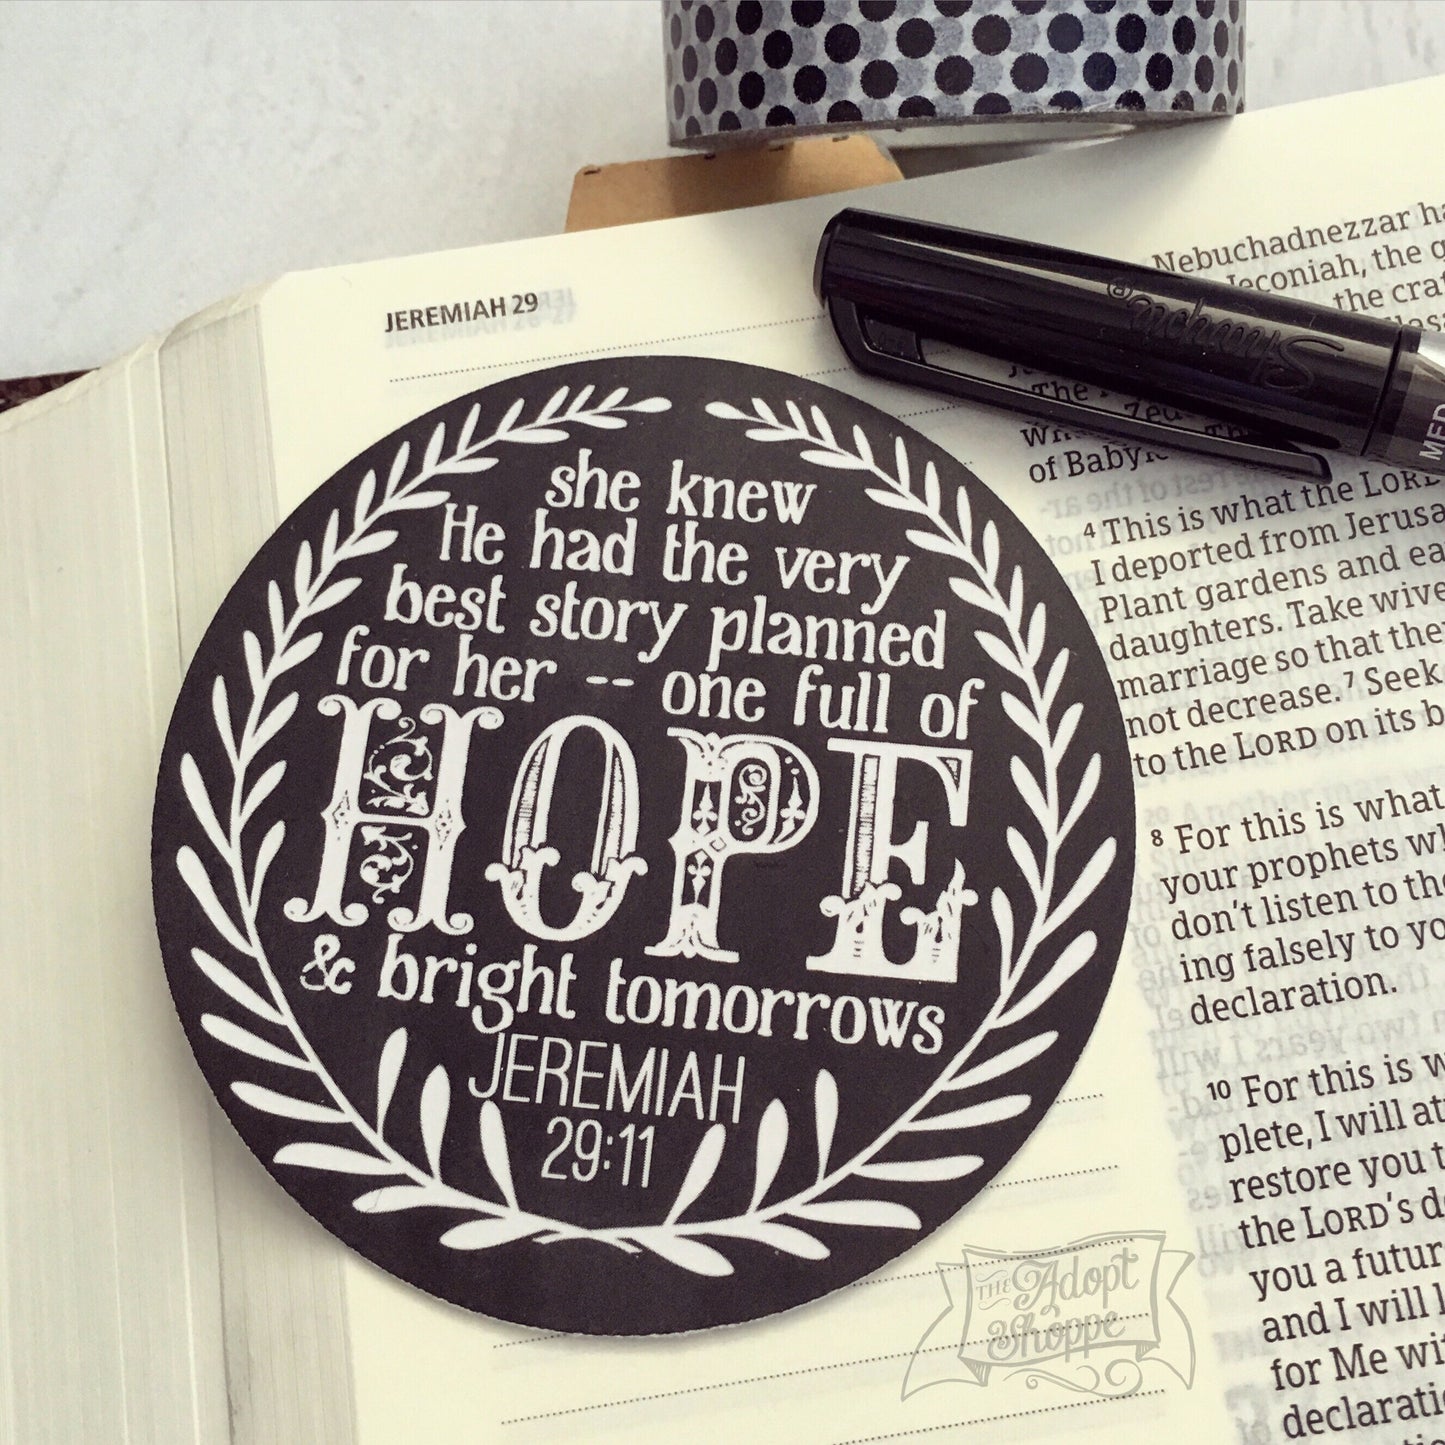 hope & a future Jeremiah 29:11 #TheAdoptShoppecard